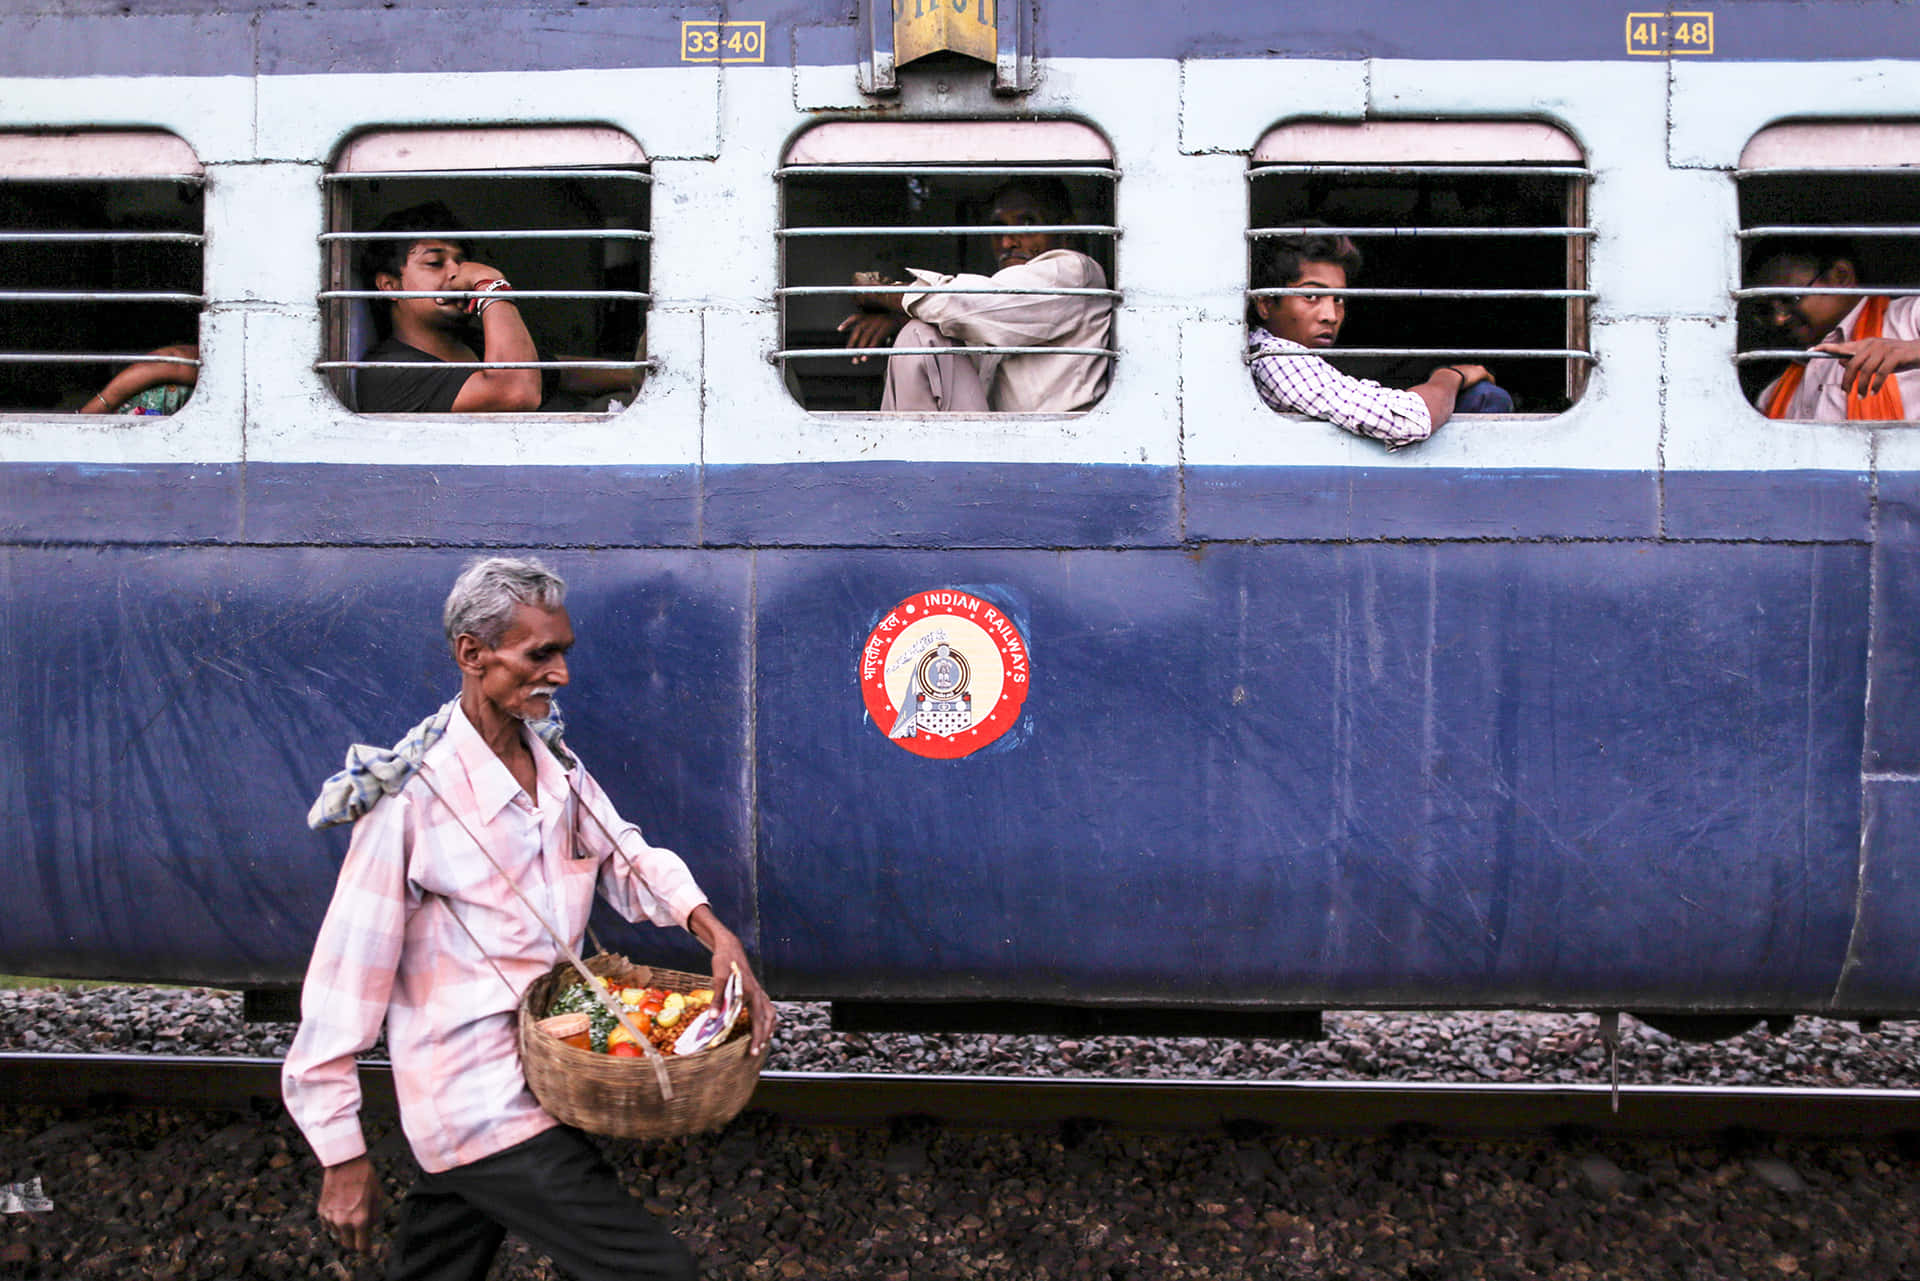 Immagineattraversamento Ferroviario Su Un Suggestivo Percorso Attraverso L'india A Khajuraho